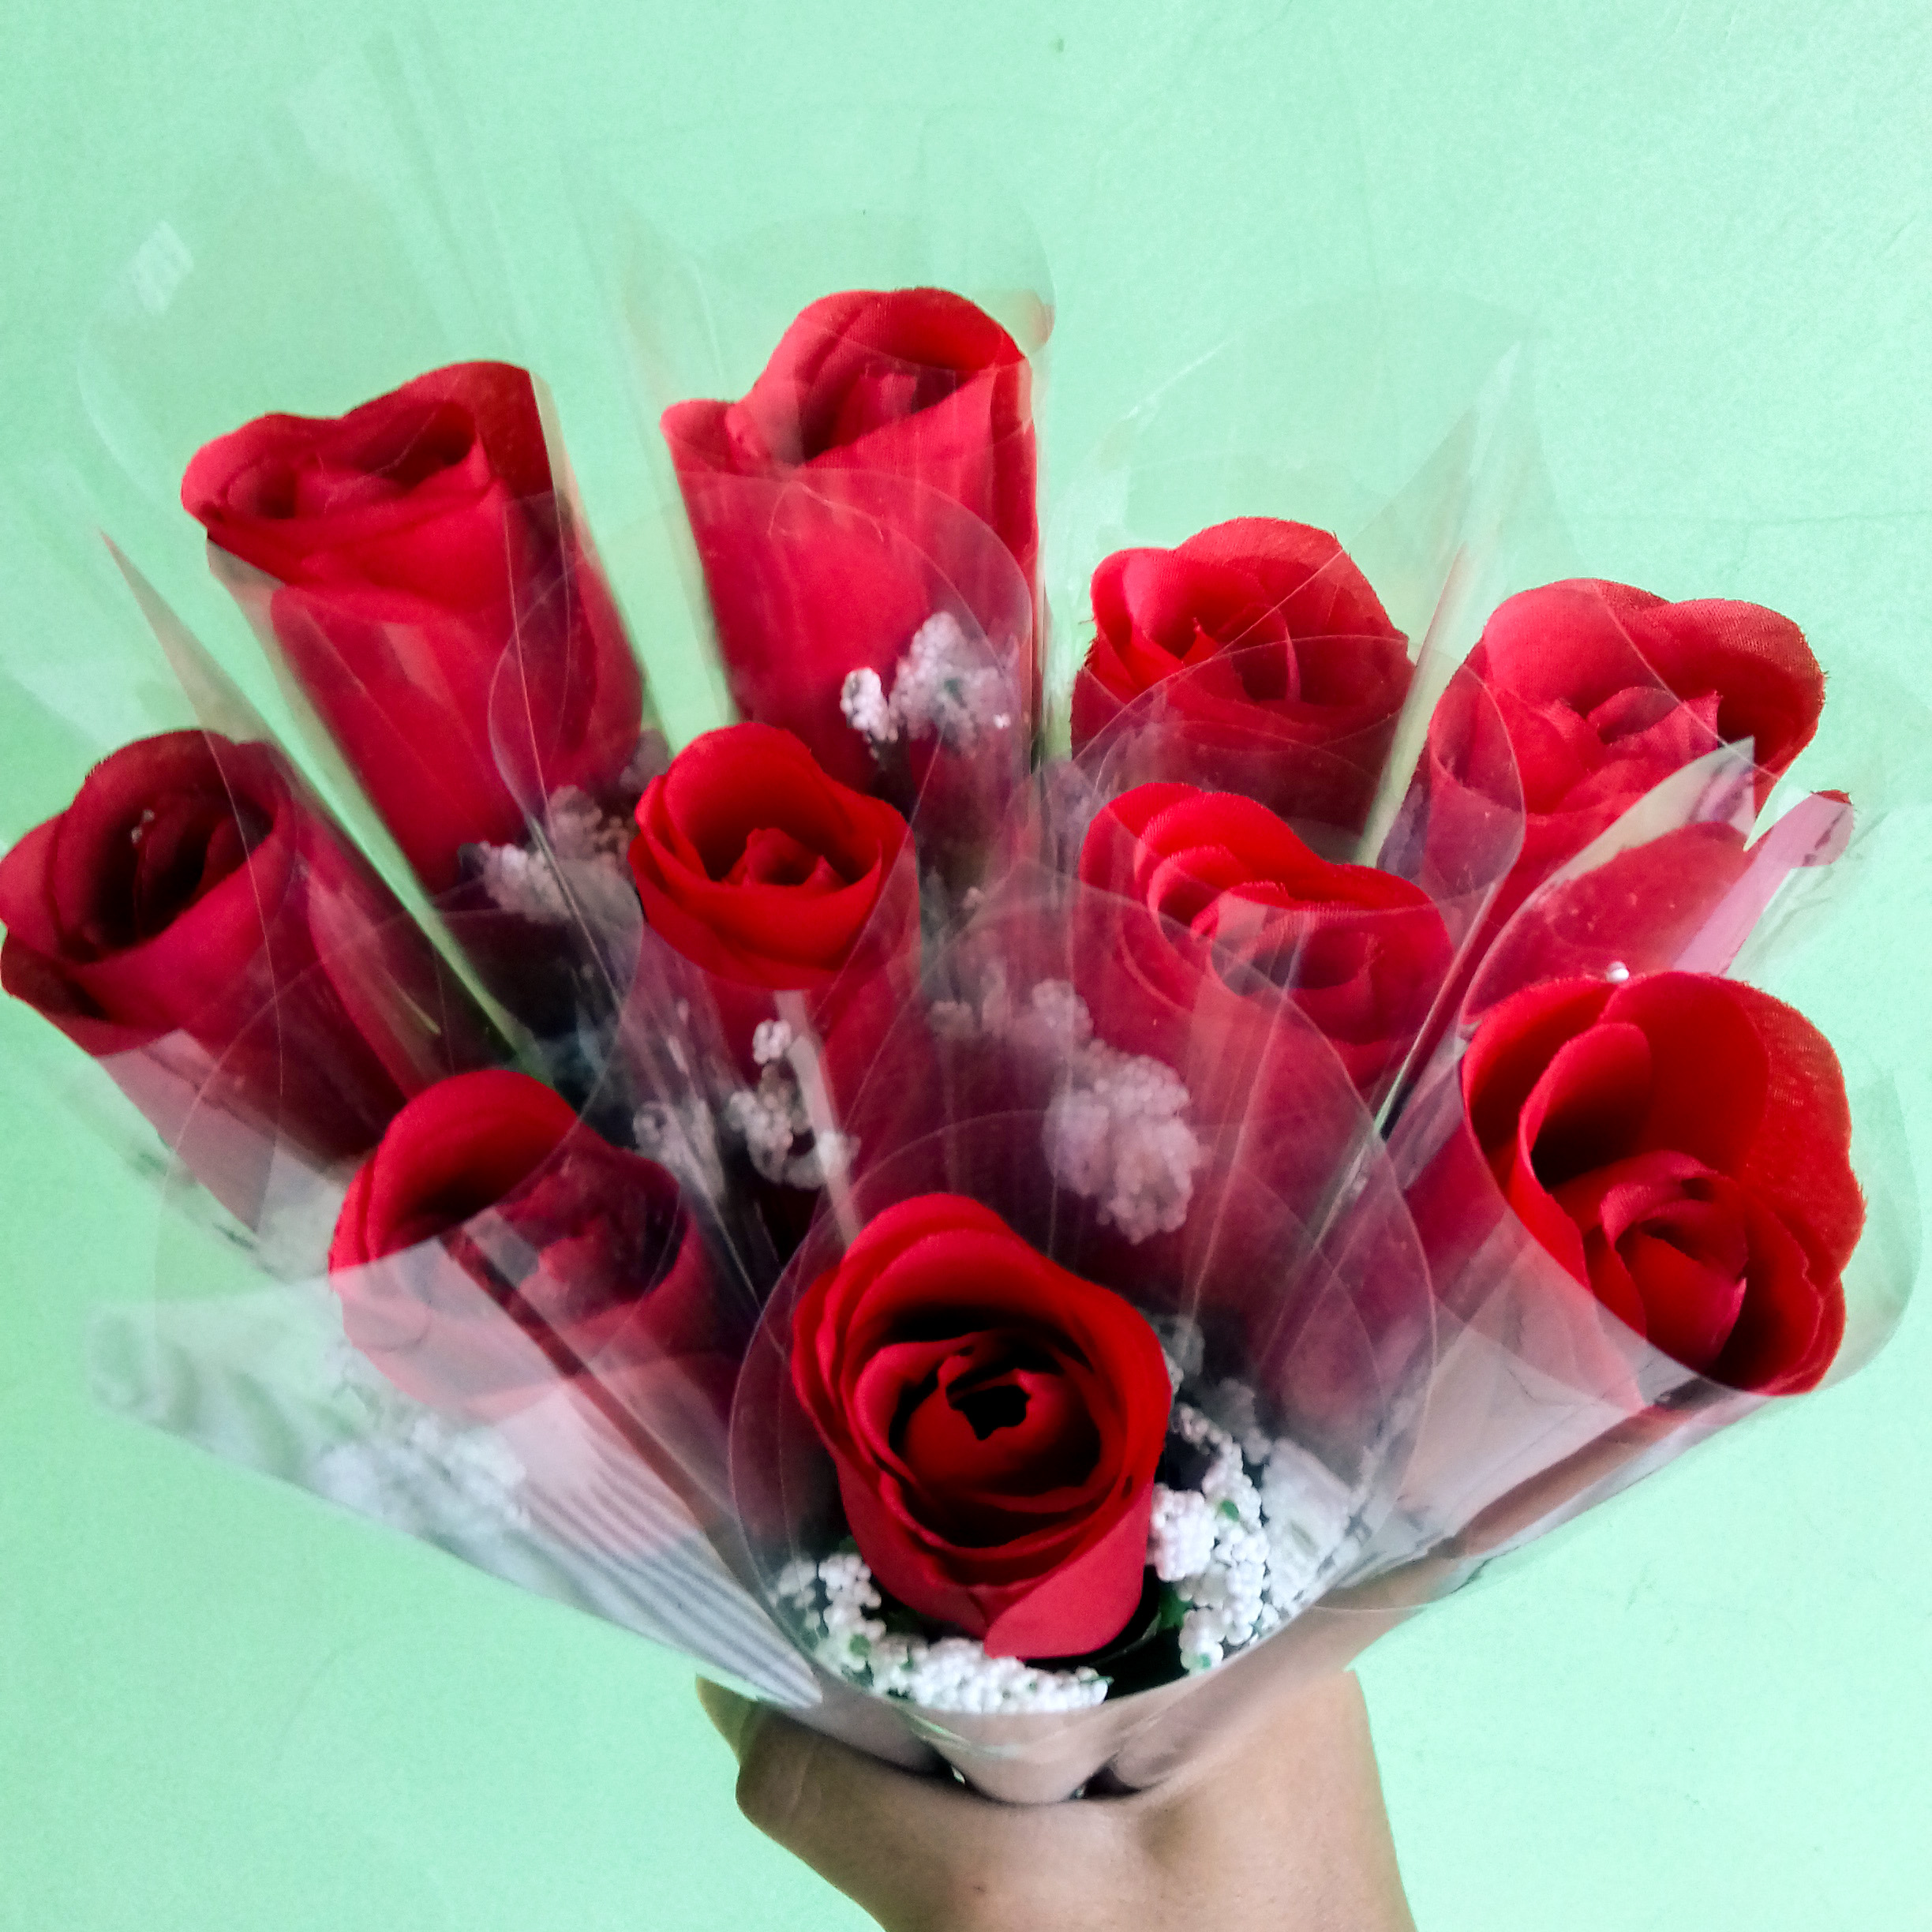 5000 Gambar Bunga Mawar Layu Tumblr  Paling Baru Infobaru